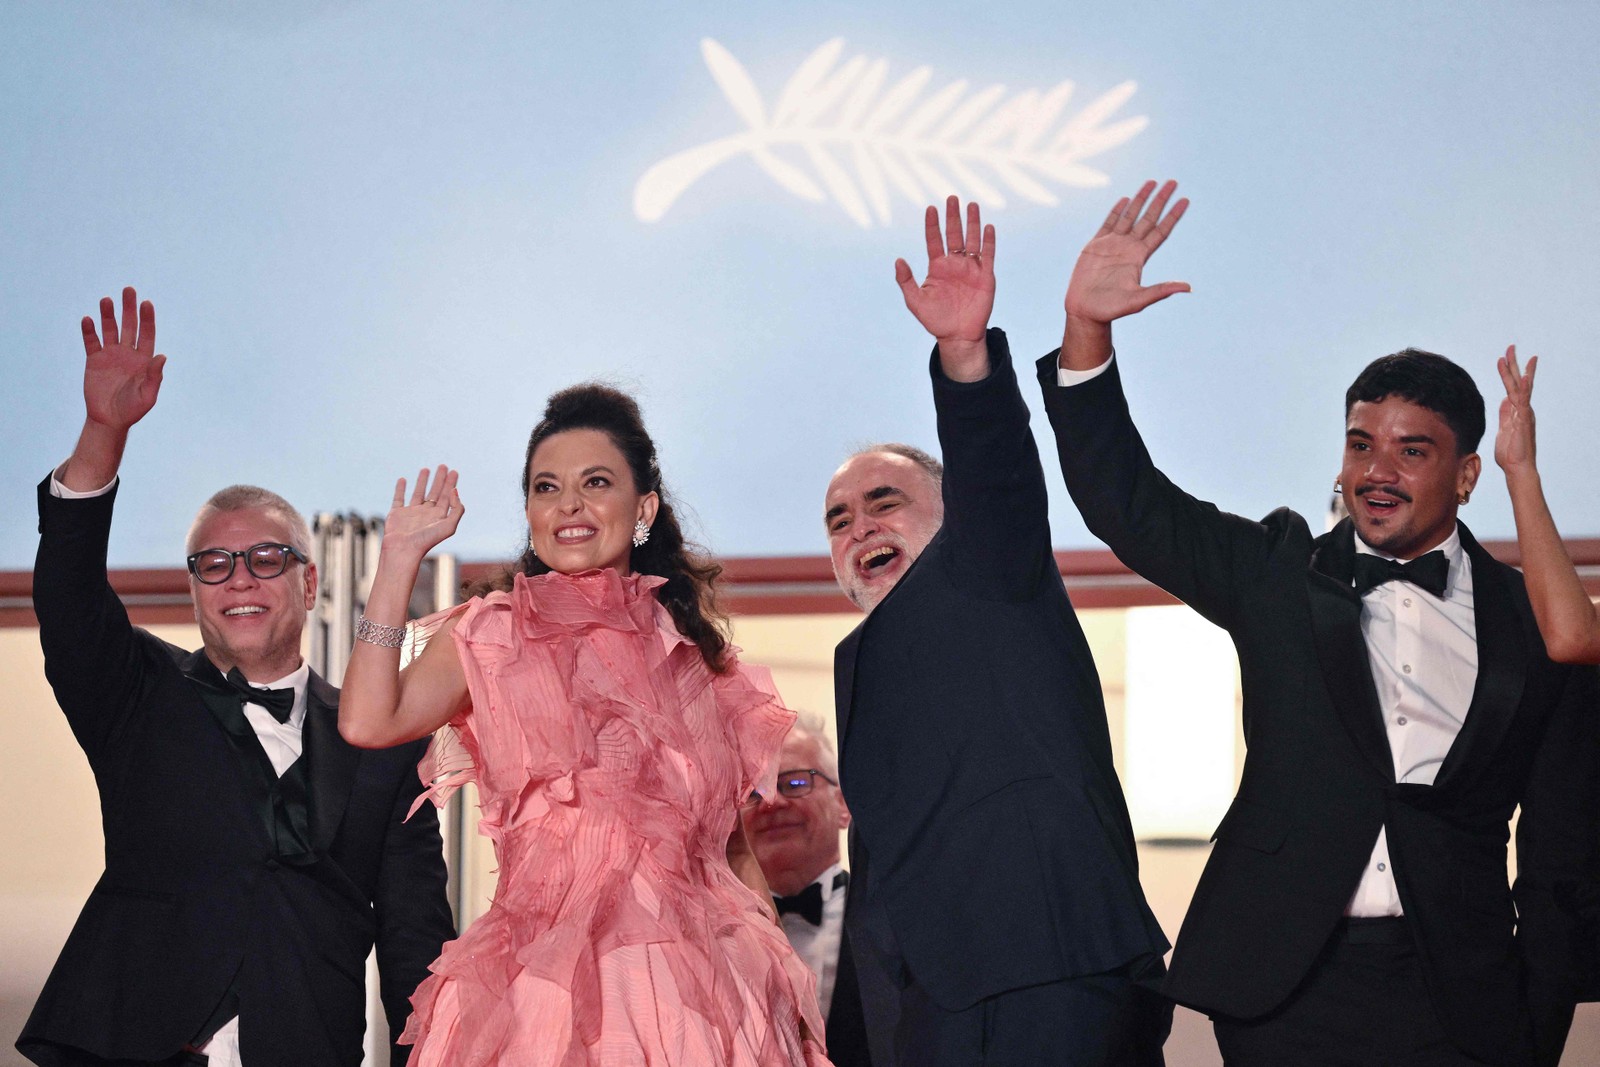 Fábio Assunção, Nataly Rocha, Karim Ainouz e Iago Xavier lançam "Motel Destino" no Festival de Cannes — Foto: Christophe SIMON / AFP